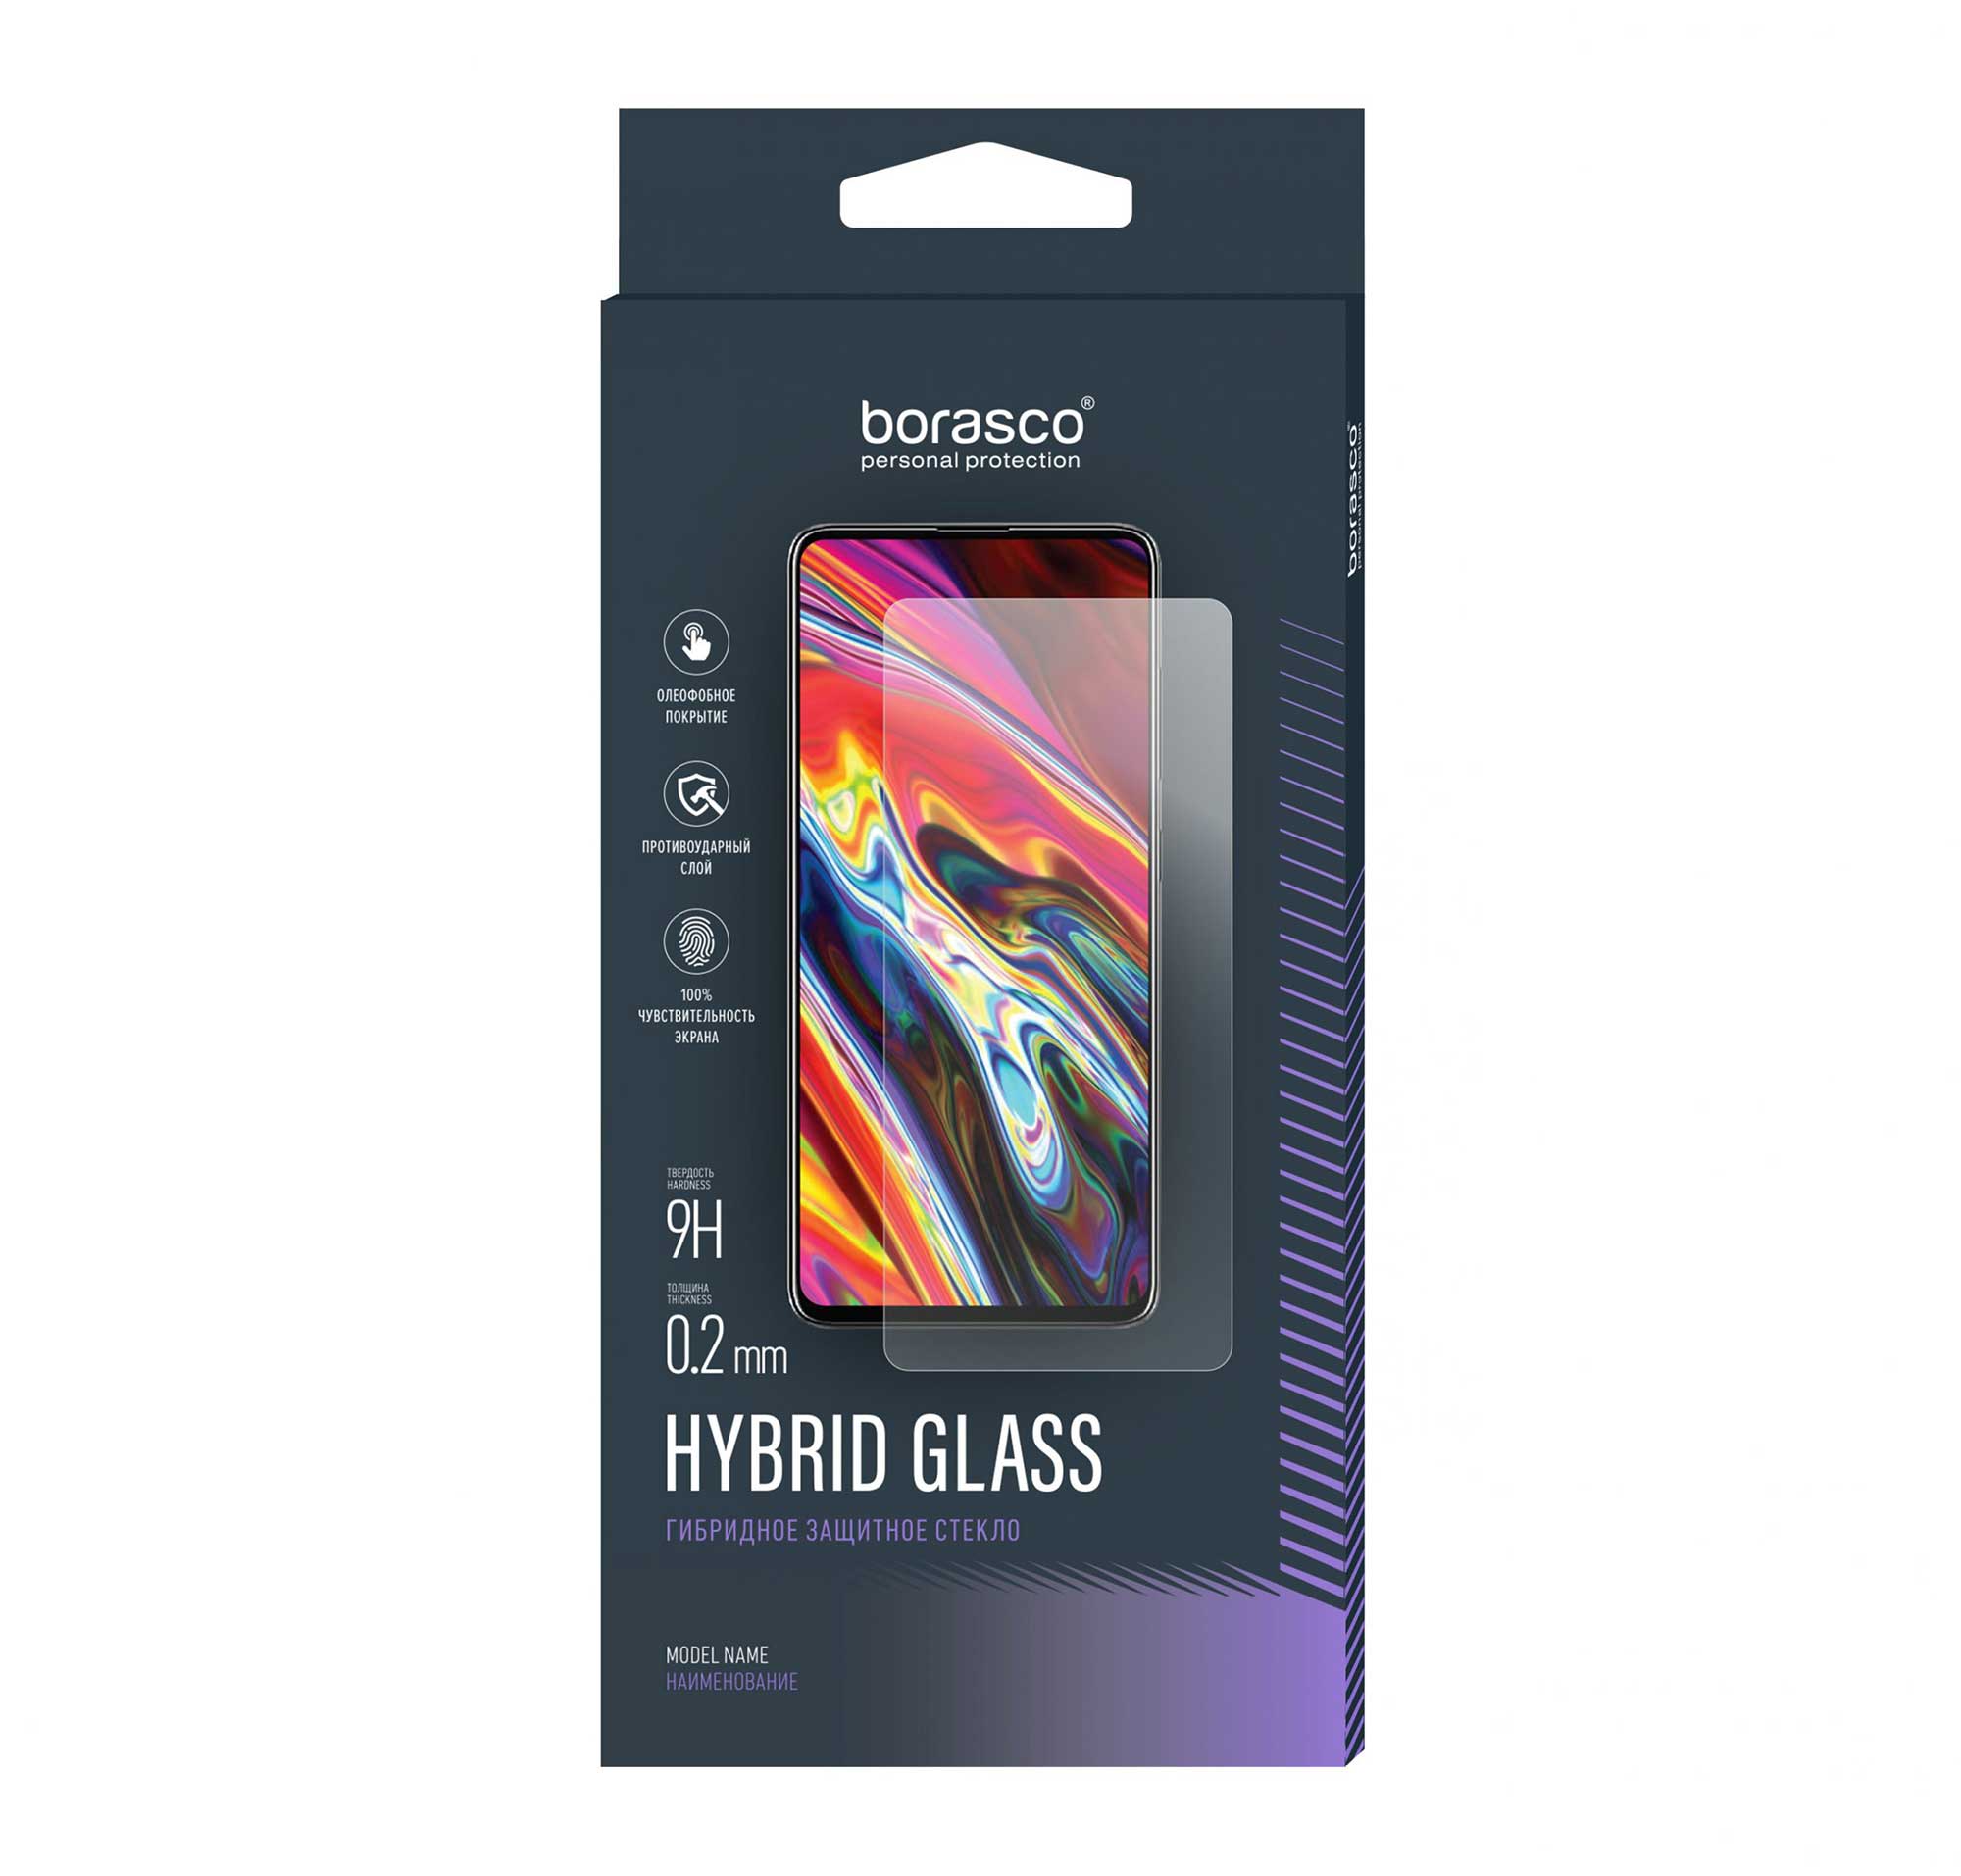 Защитное стекло BoraSCO Hybrid Glass для BQ 6040L Magic чехол mypads зайчик с полуседрцем для bq bq 6040l magic задняя панель накладка бампер